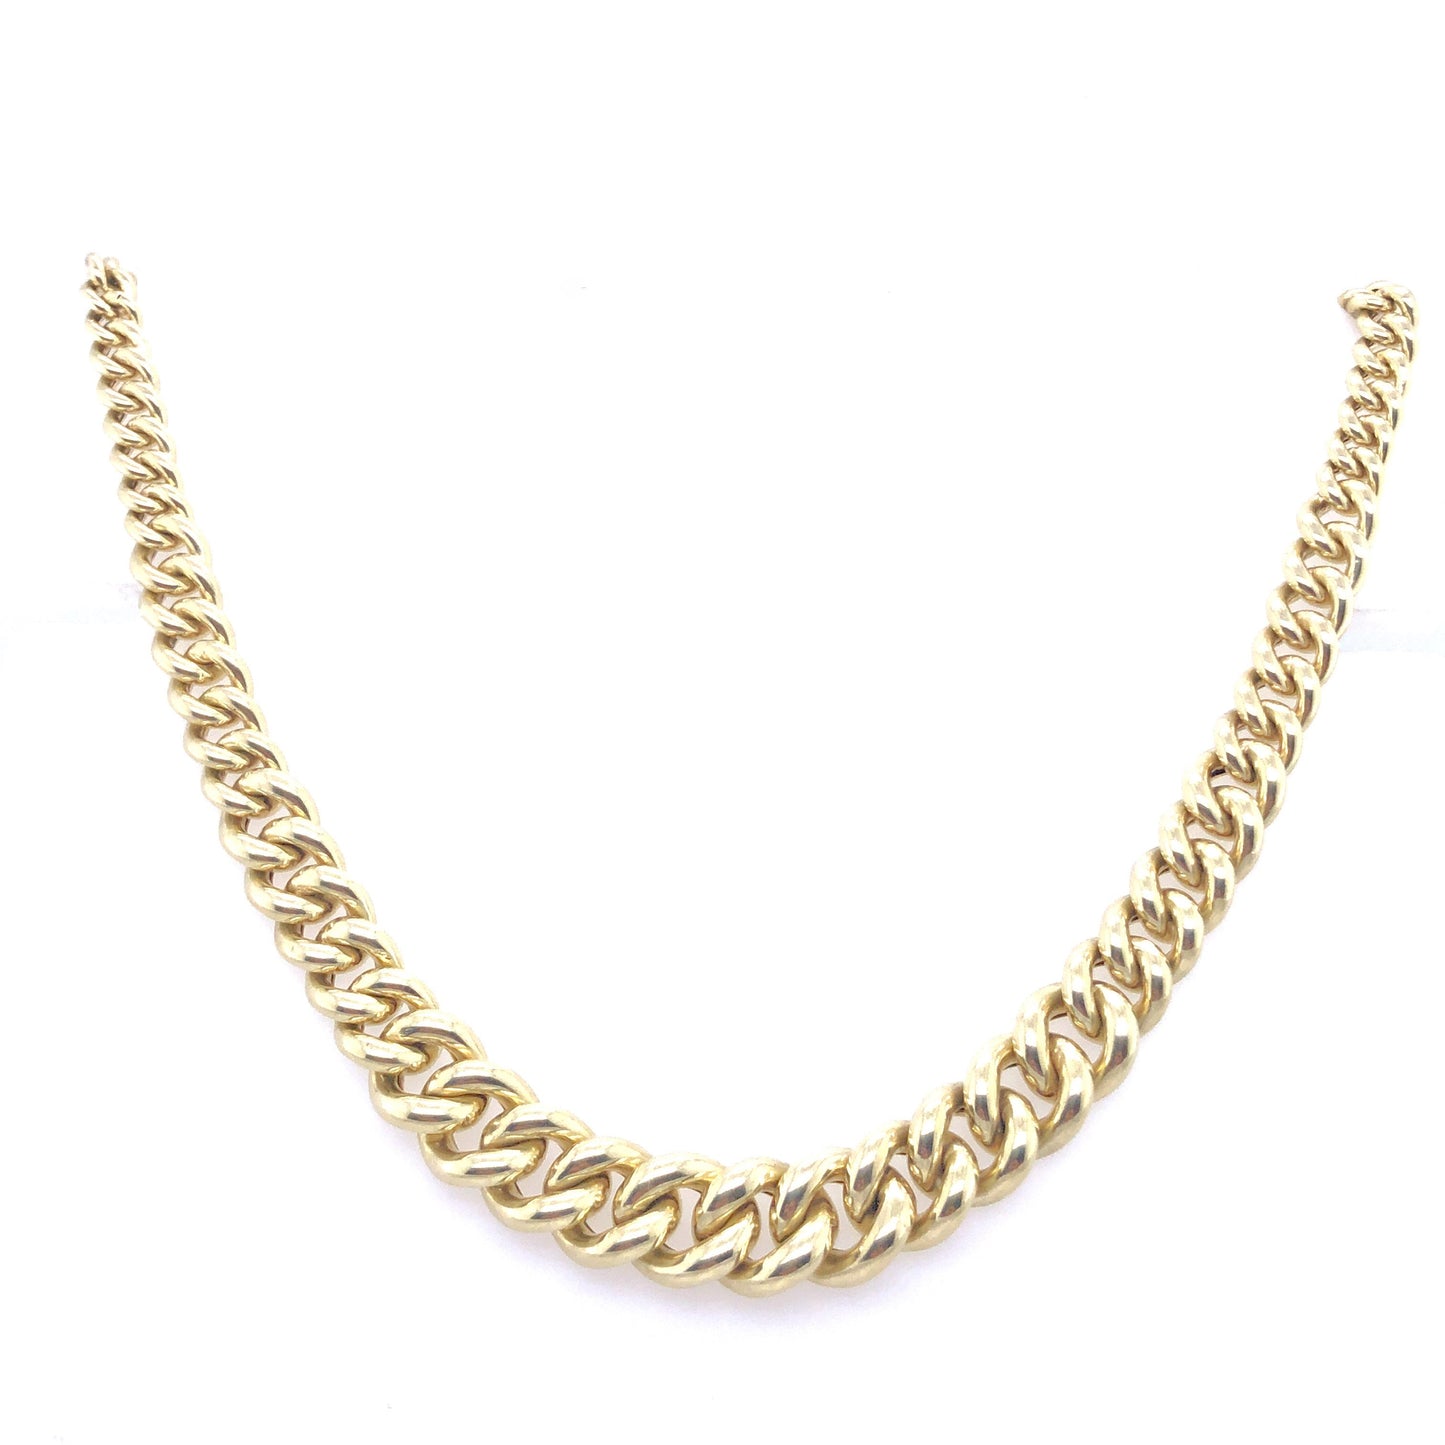 Halskette Collier Gold 585 / 14k, wird an der Vorderseite breiter